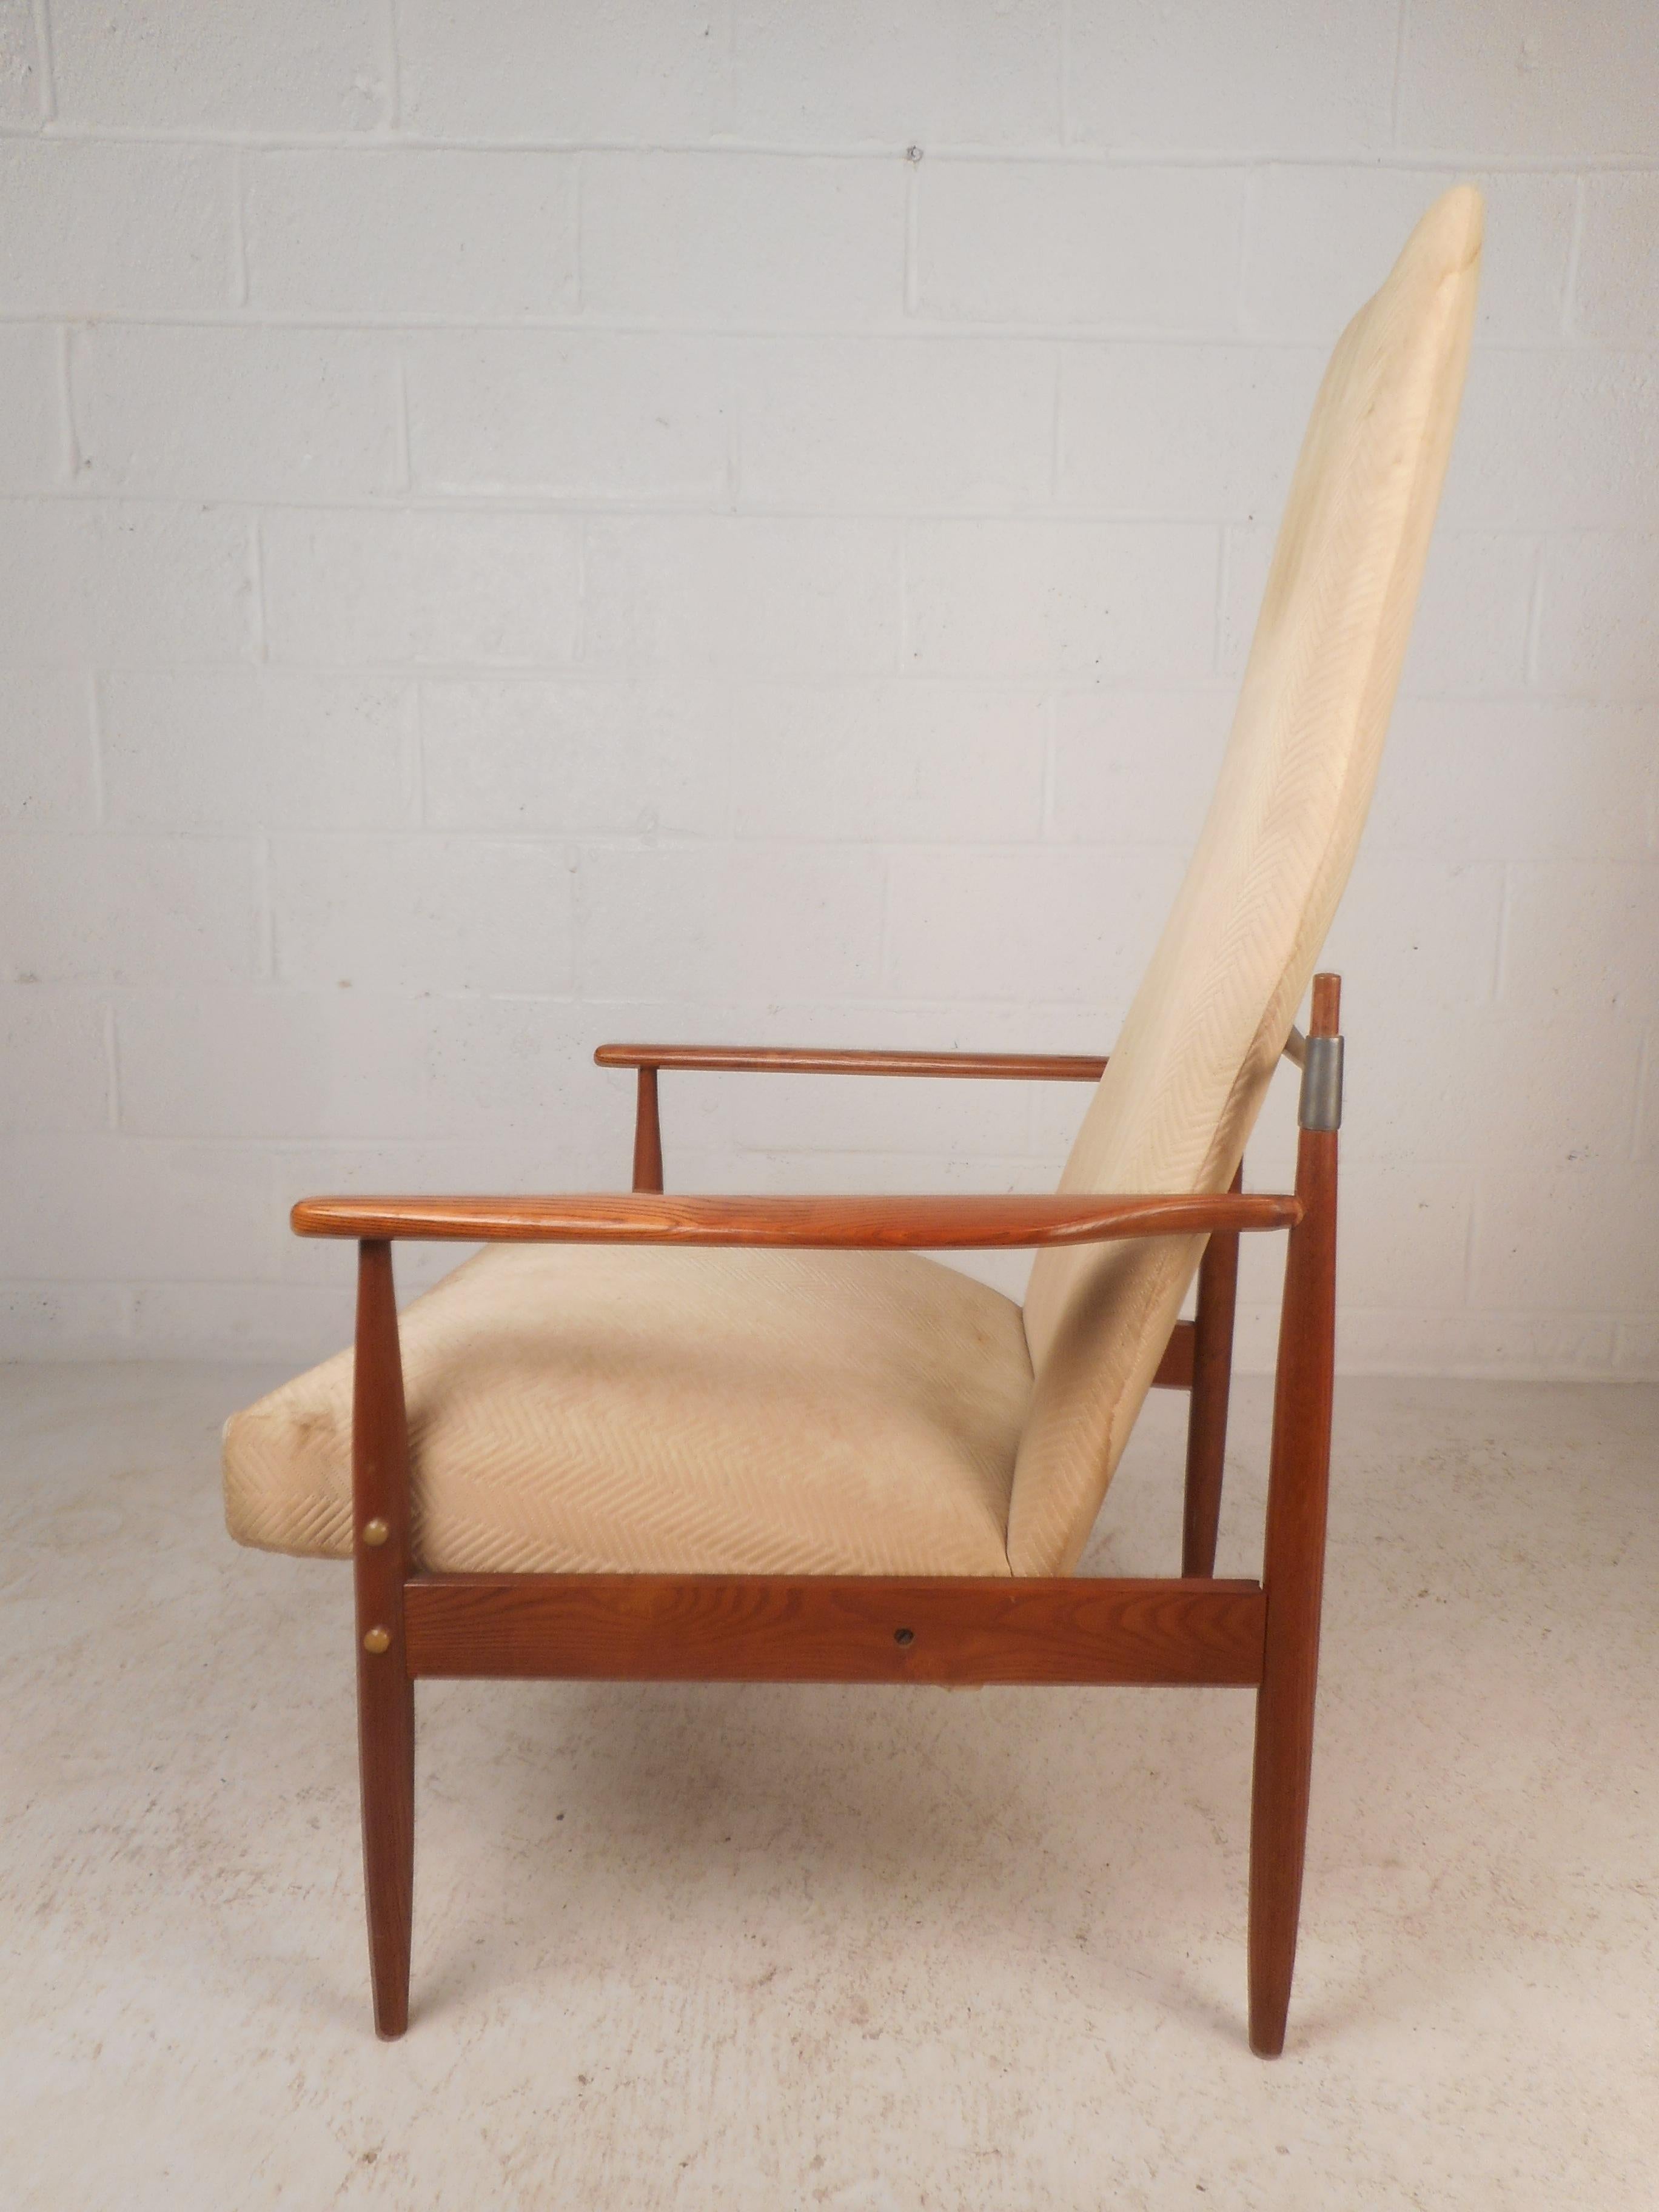 Dieser schöne Mid-Century Modern Lounge Chair hat eine hohe Rückenlehne und einen dick gepolsterten Sitz. Elegantes dänisches Design mit einem Rahmen aus geschliffenem Eichenholz und konisch zulaufenden Beinen. Dieser seltene Loungesessel im Stil